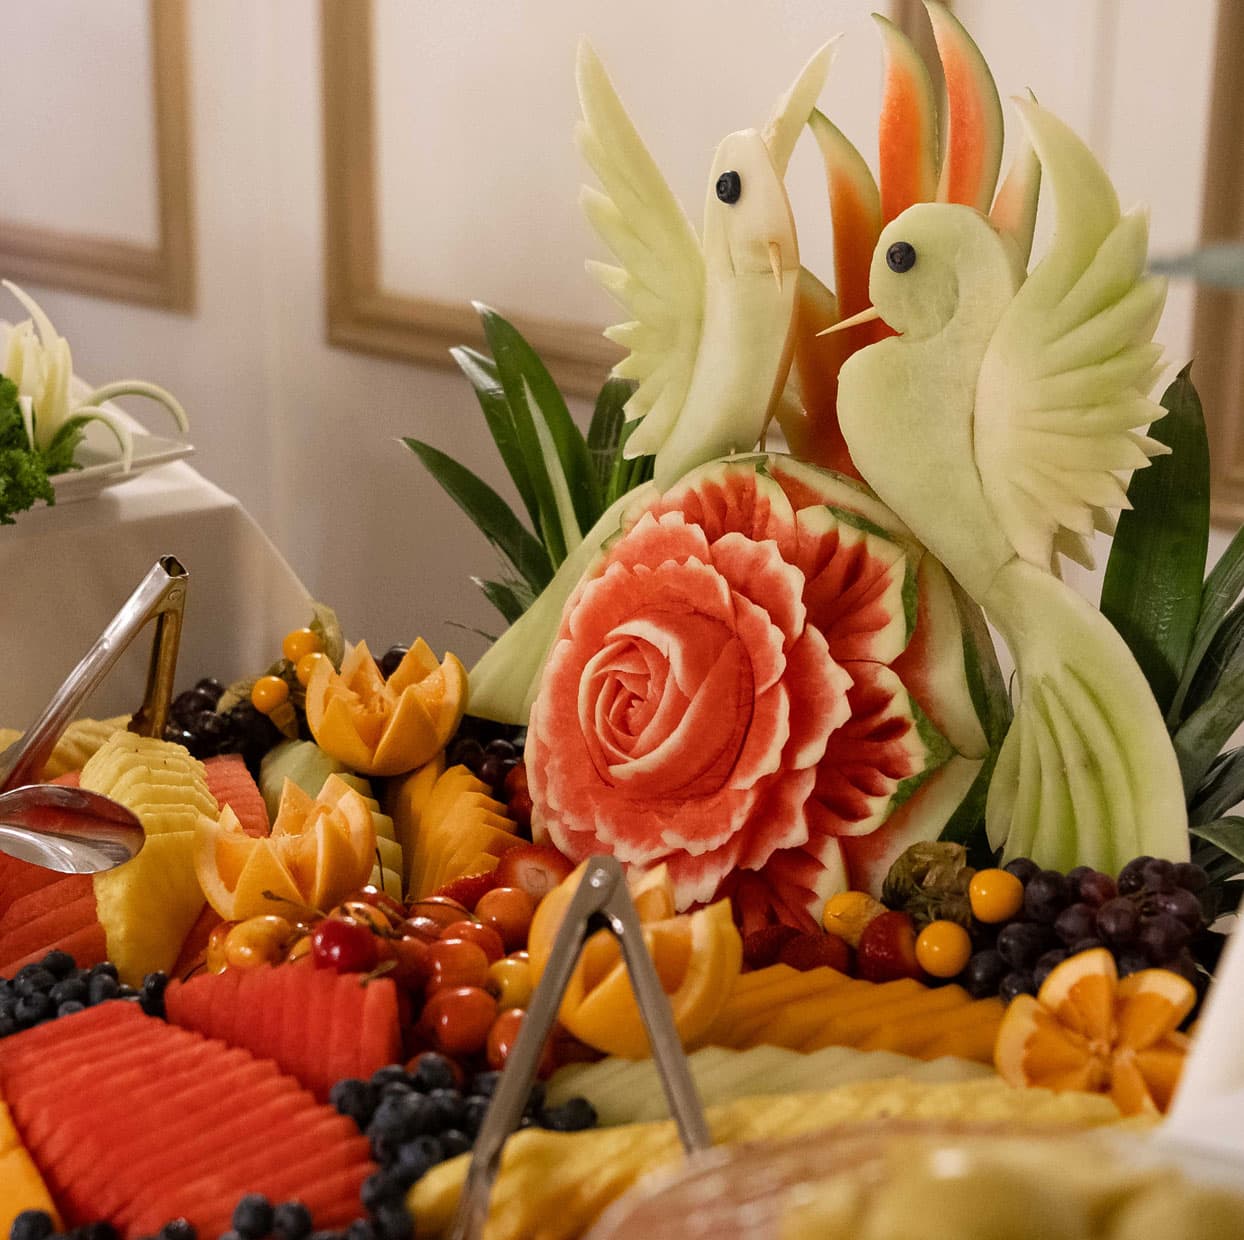 a fruit platter sculpture of a bird